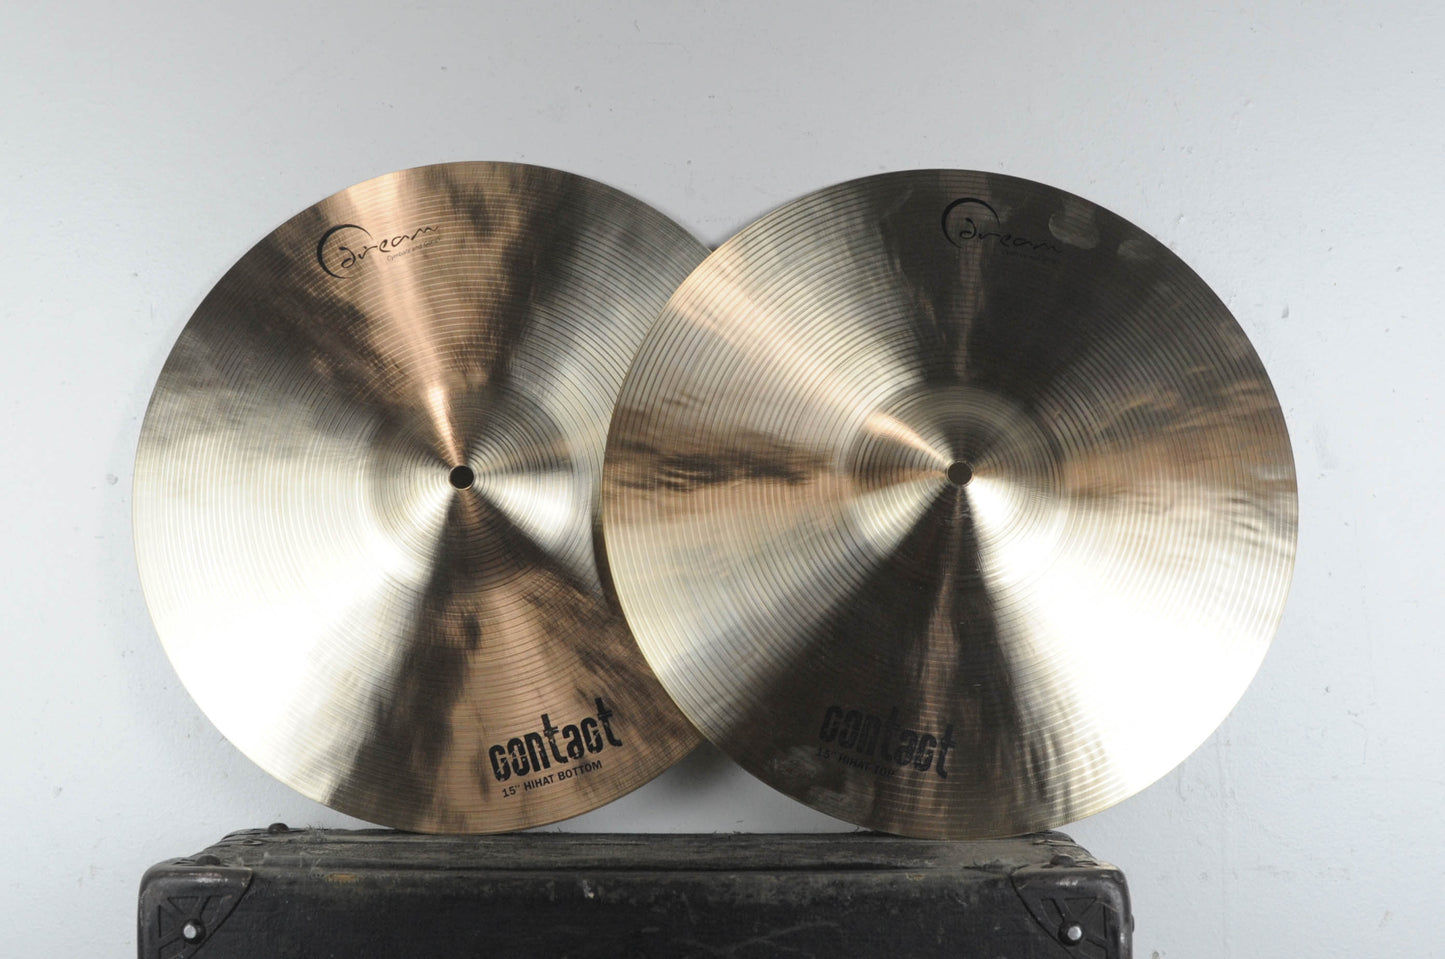 Dream Cymbals Contact Series 15" Hi Hat 1097g 1036g